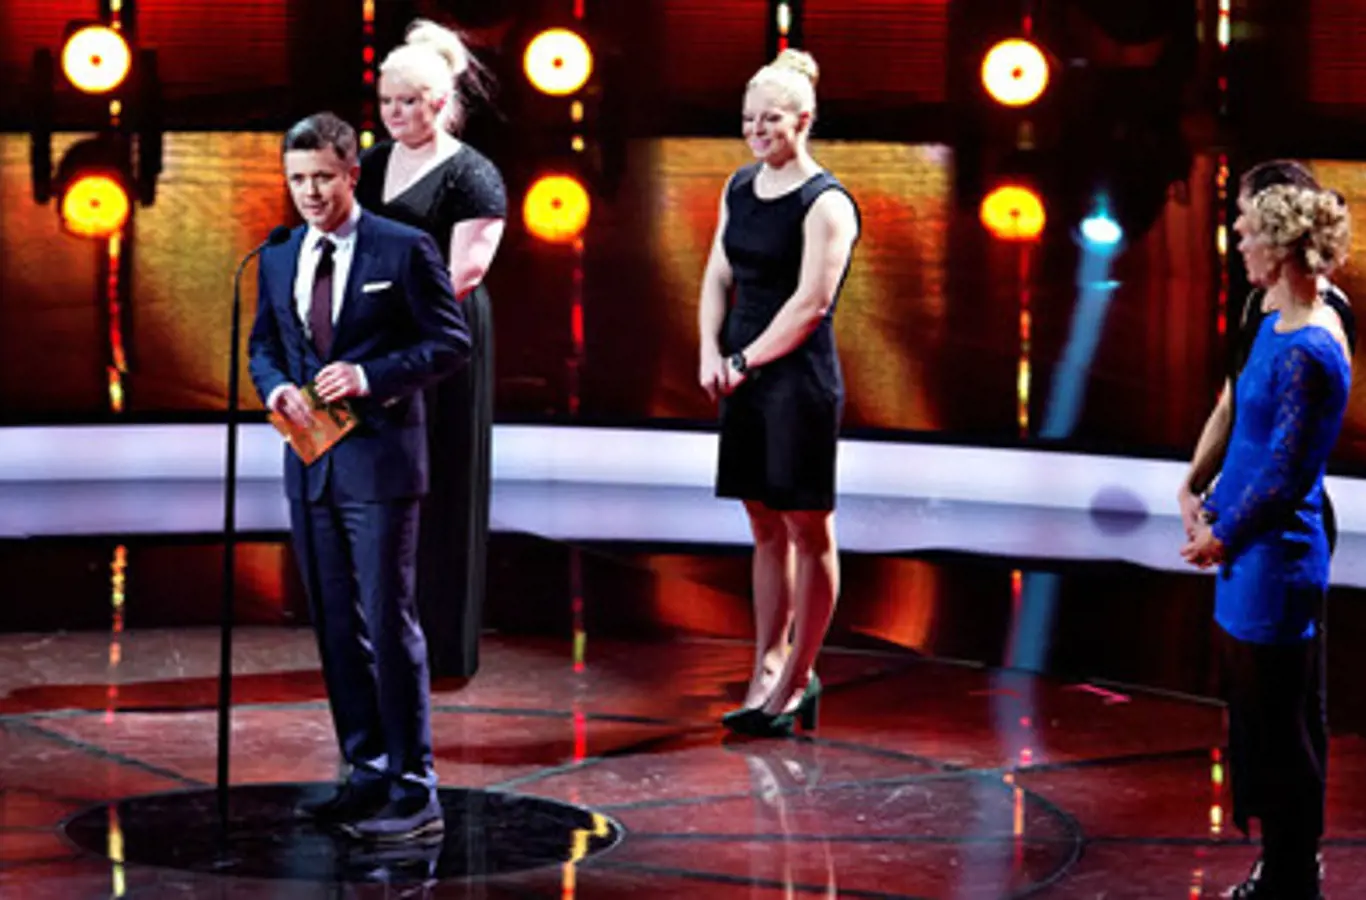 Ved 'Sport 2014' uddelte Kronprinsen prisen 'Danmarks olympiske håb' til kajakroer Emma Jørgensen.